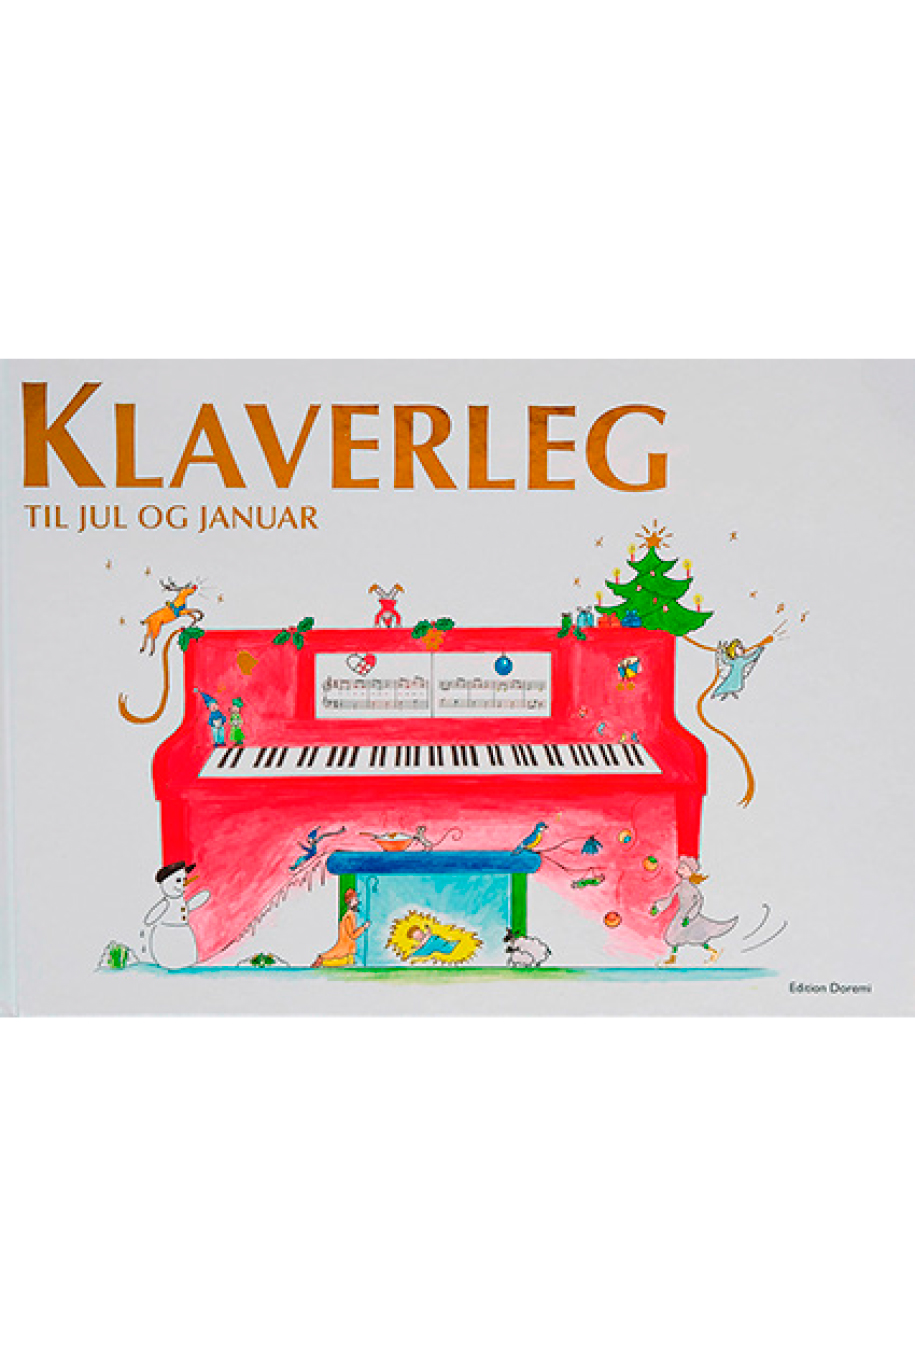 Klaverleg Julebog - Klaverleg til jul januar - Klaverleg klaver for de helt - Stepnote